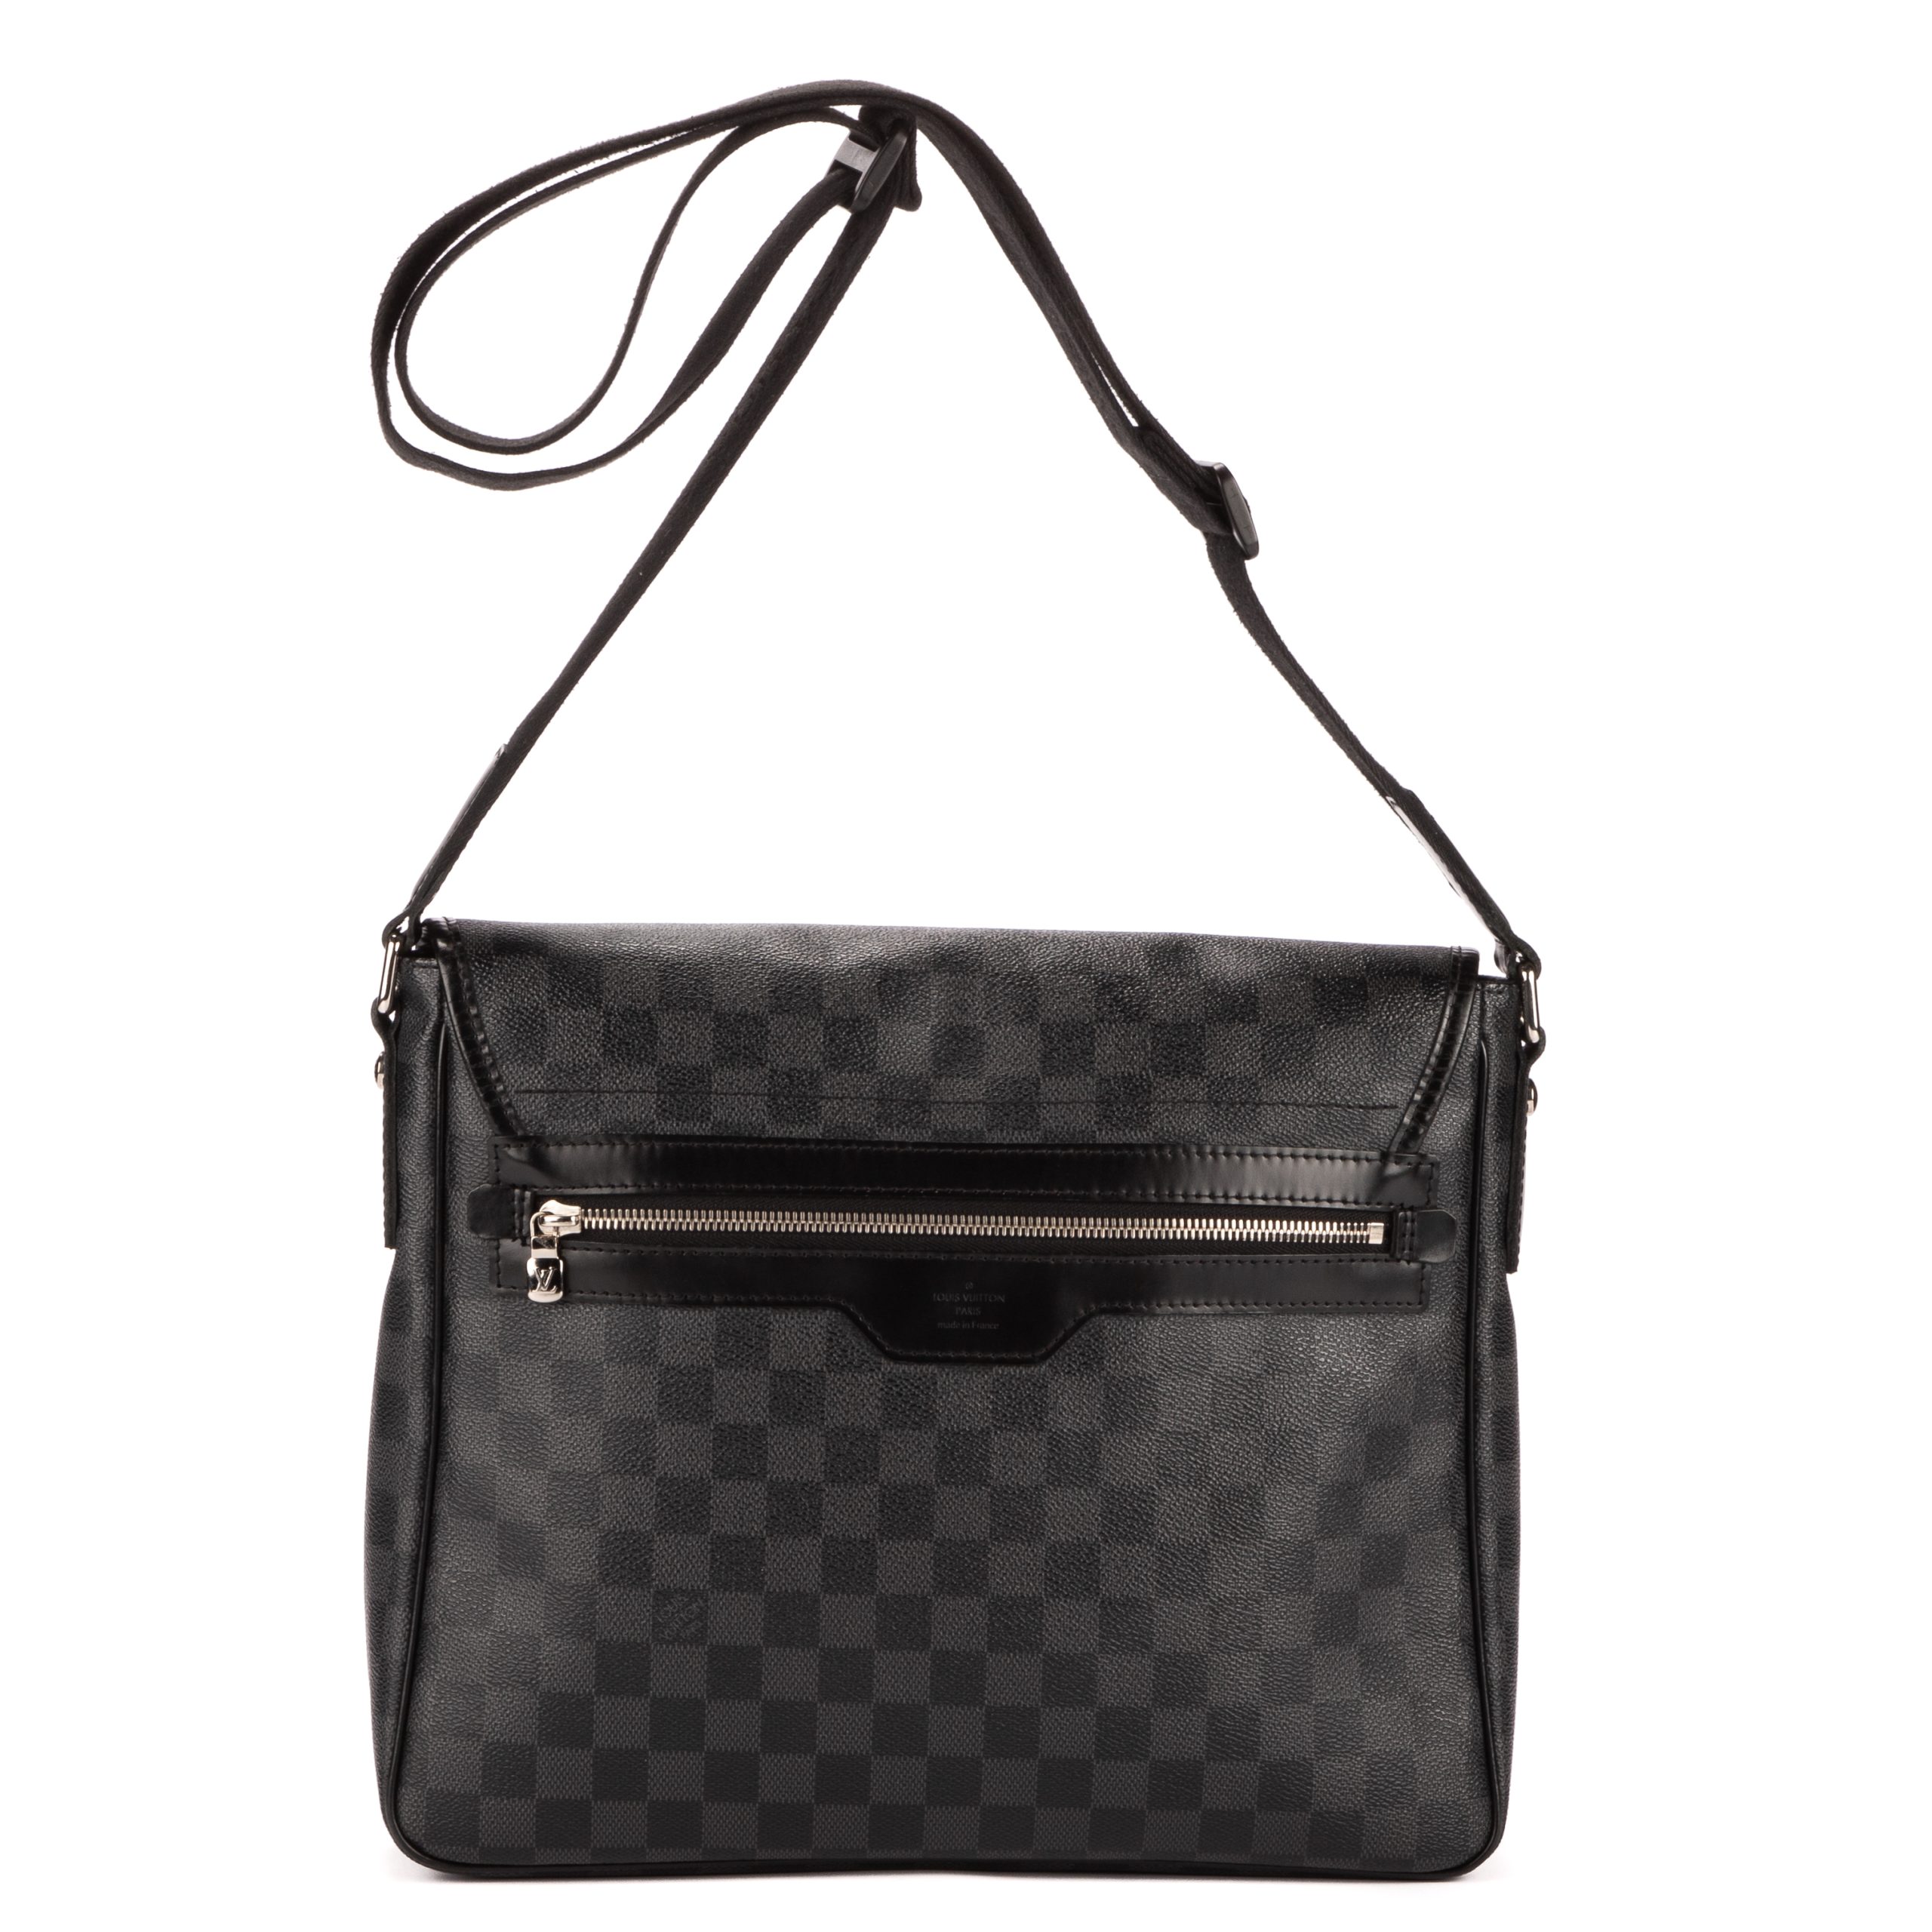 Louis Vuitton District Messenger Bag Damier Graphite MM, at